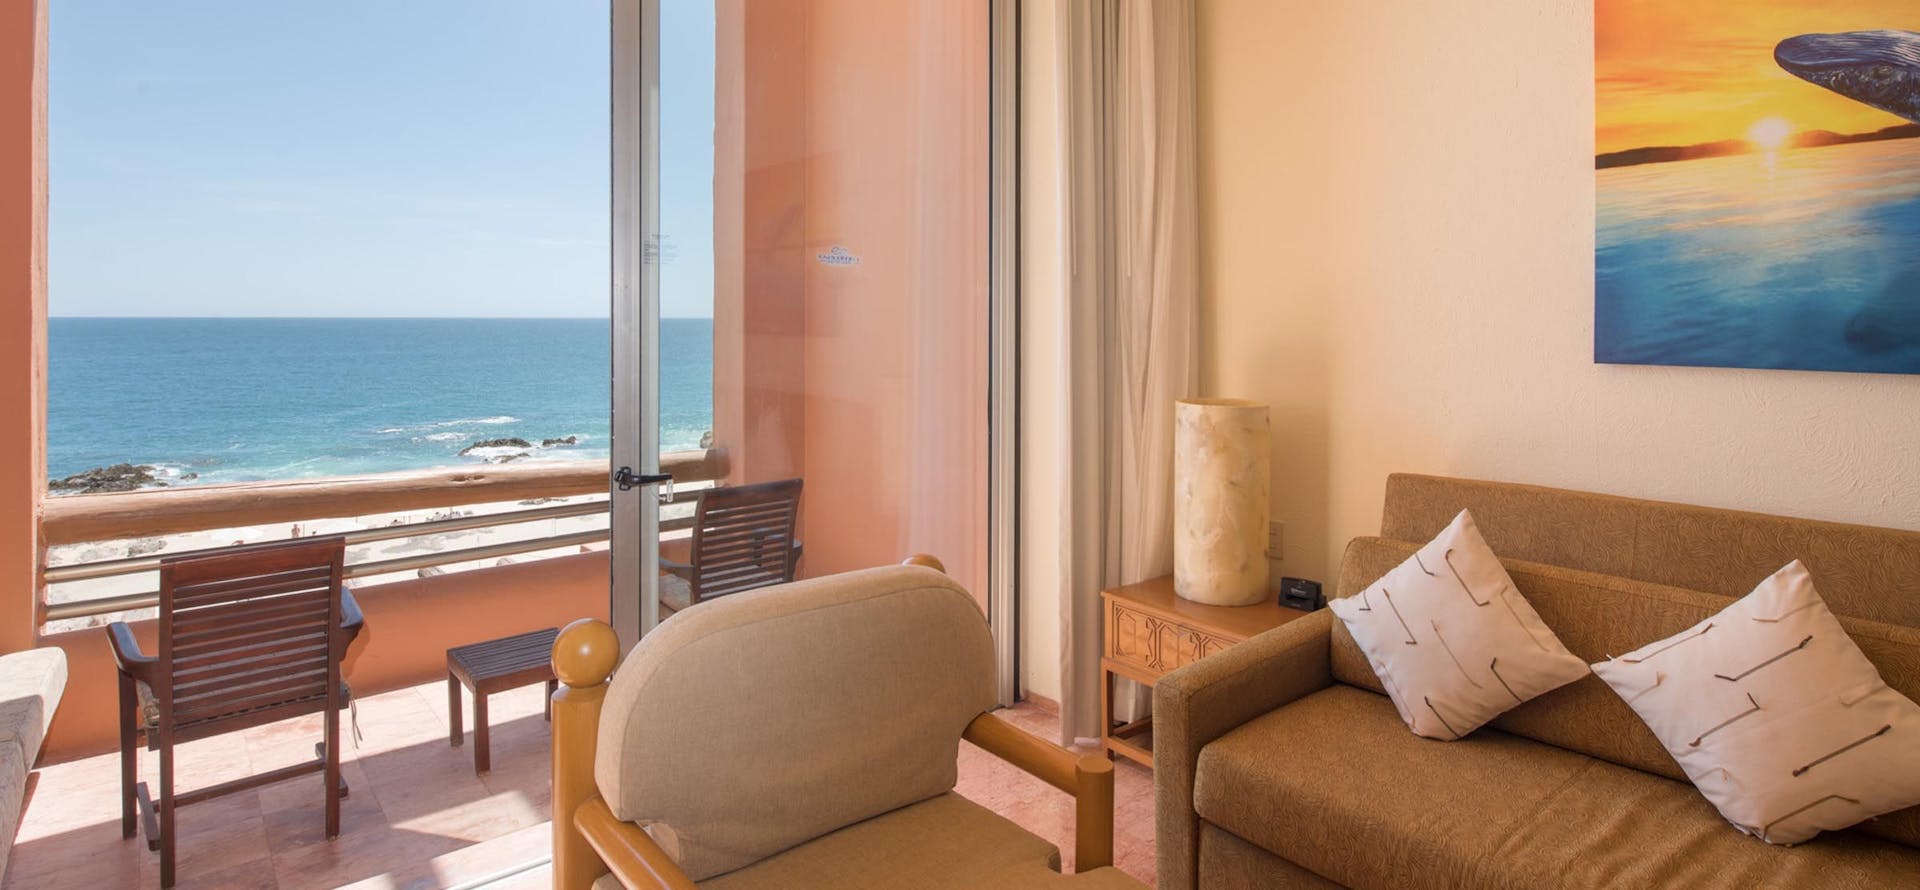 room-with-beautiful-view-of-the-ocean-of-hotel-de-club-regina-los-cabos